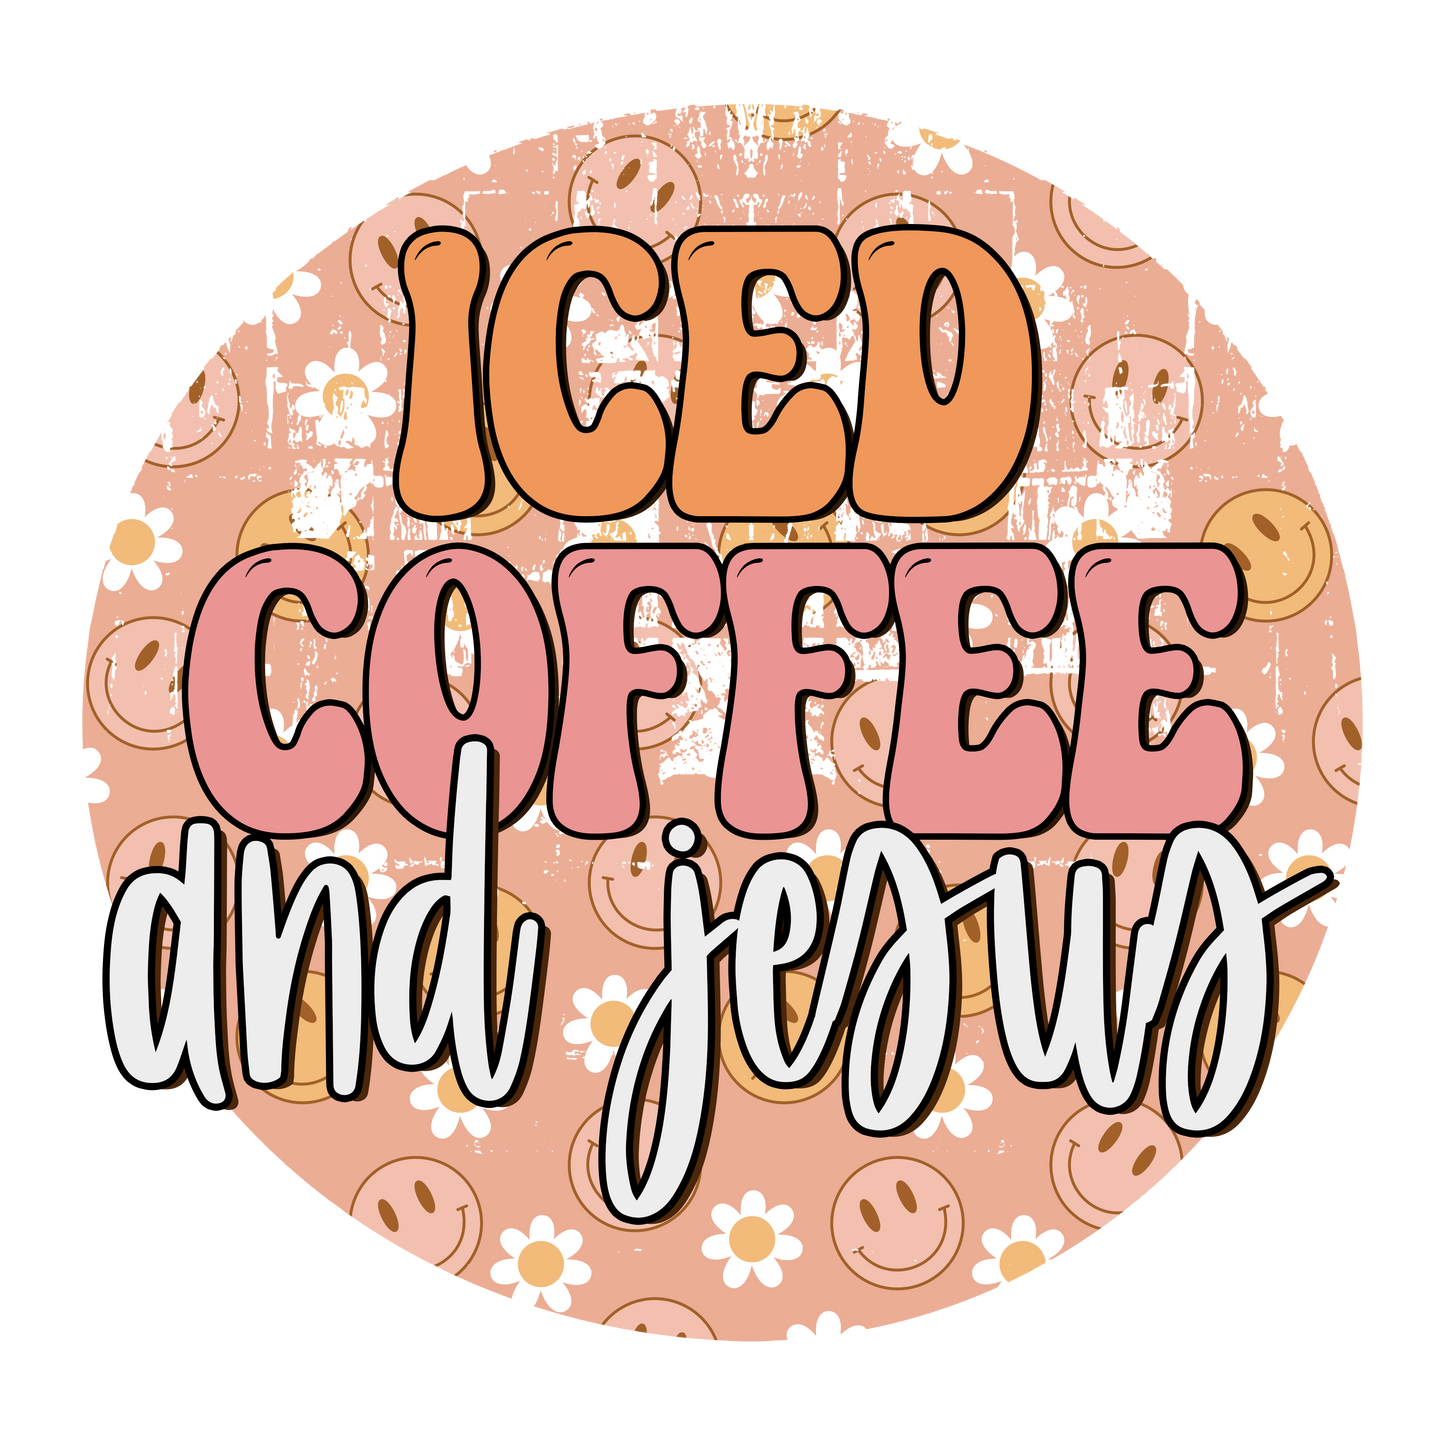 "Iced Coffee & Jesus" Transfer